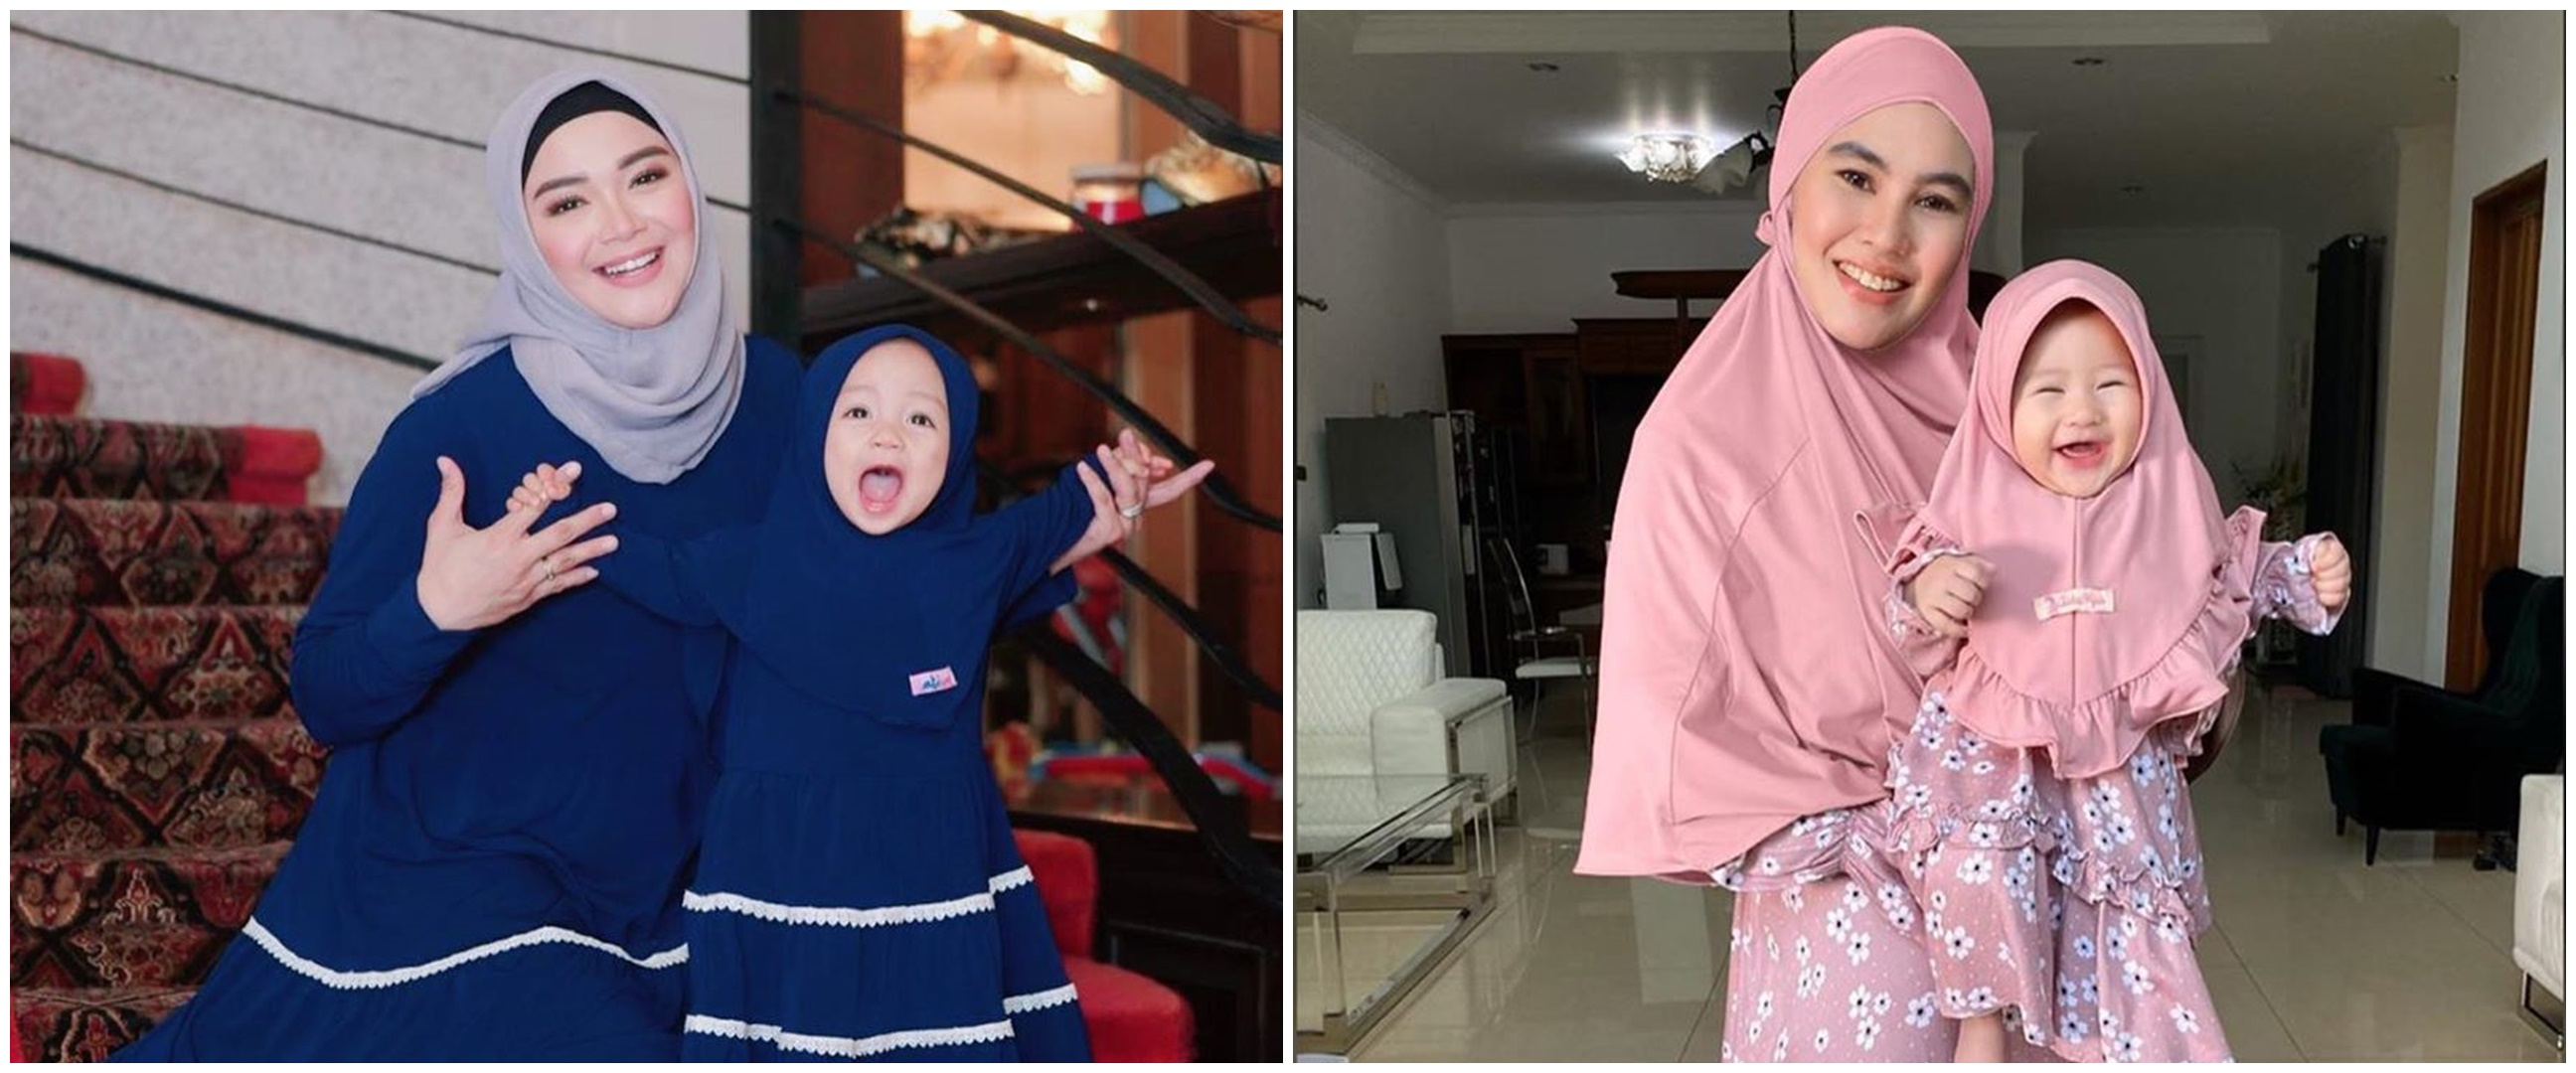 Potret 7 seleb kembaran baju muslim sama anak ini bisa ditiru